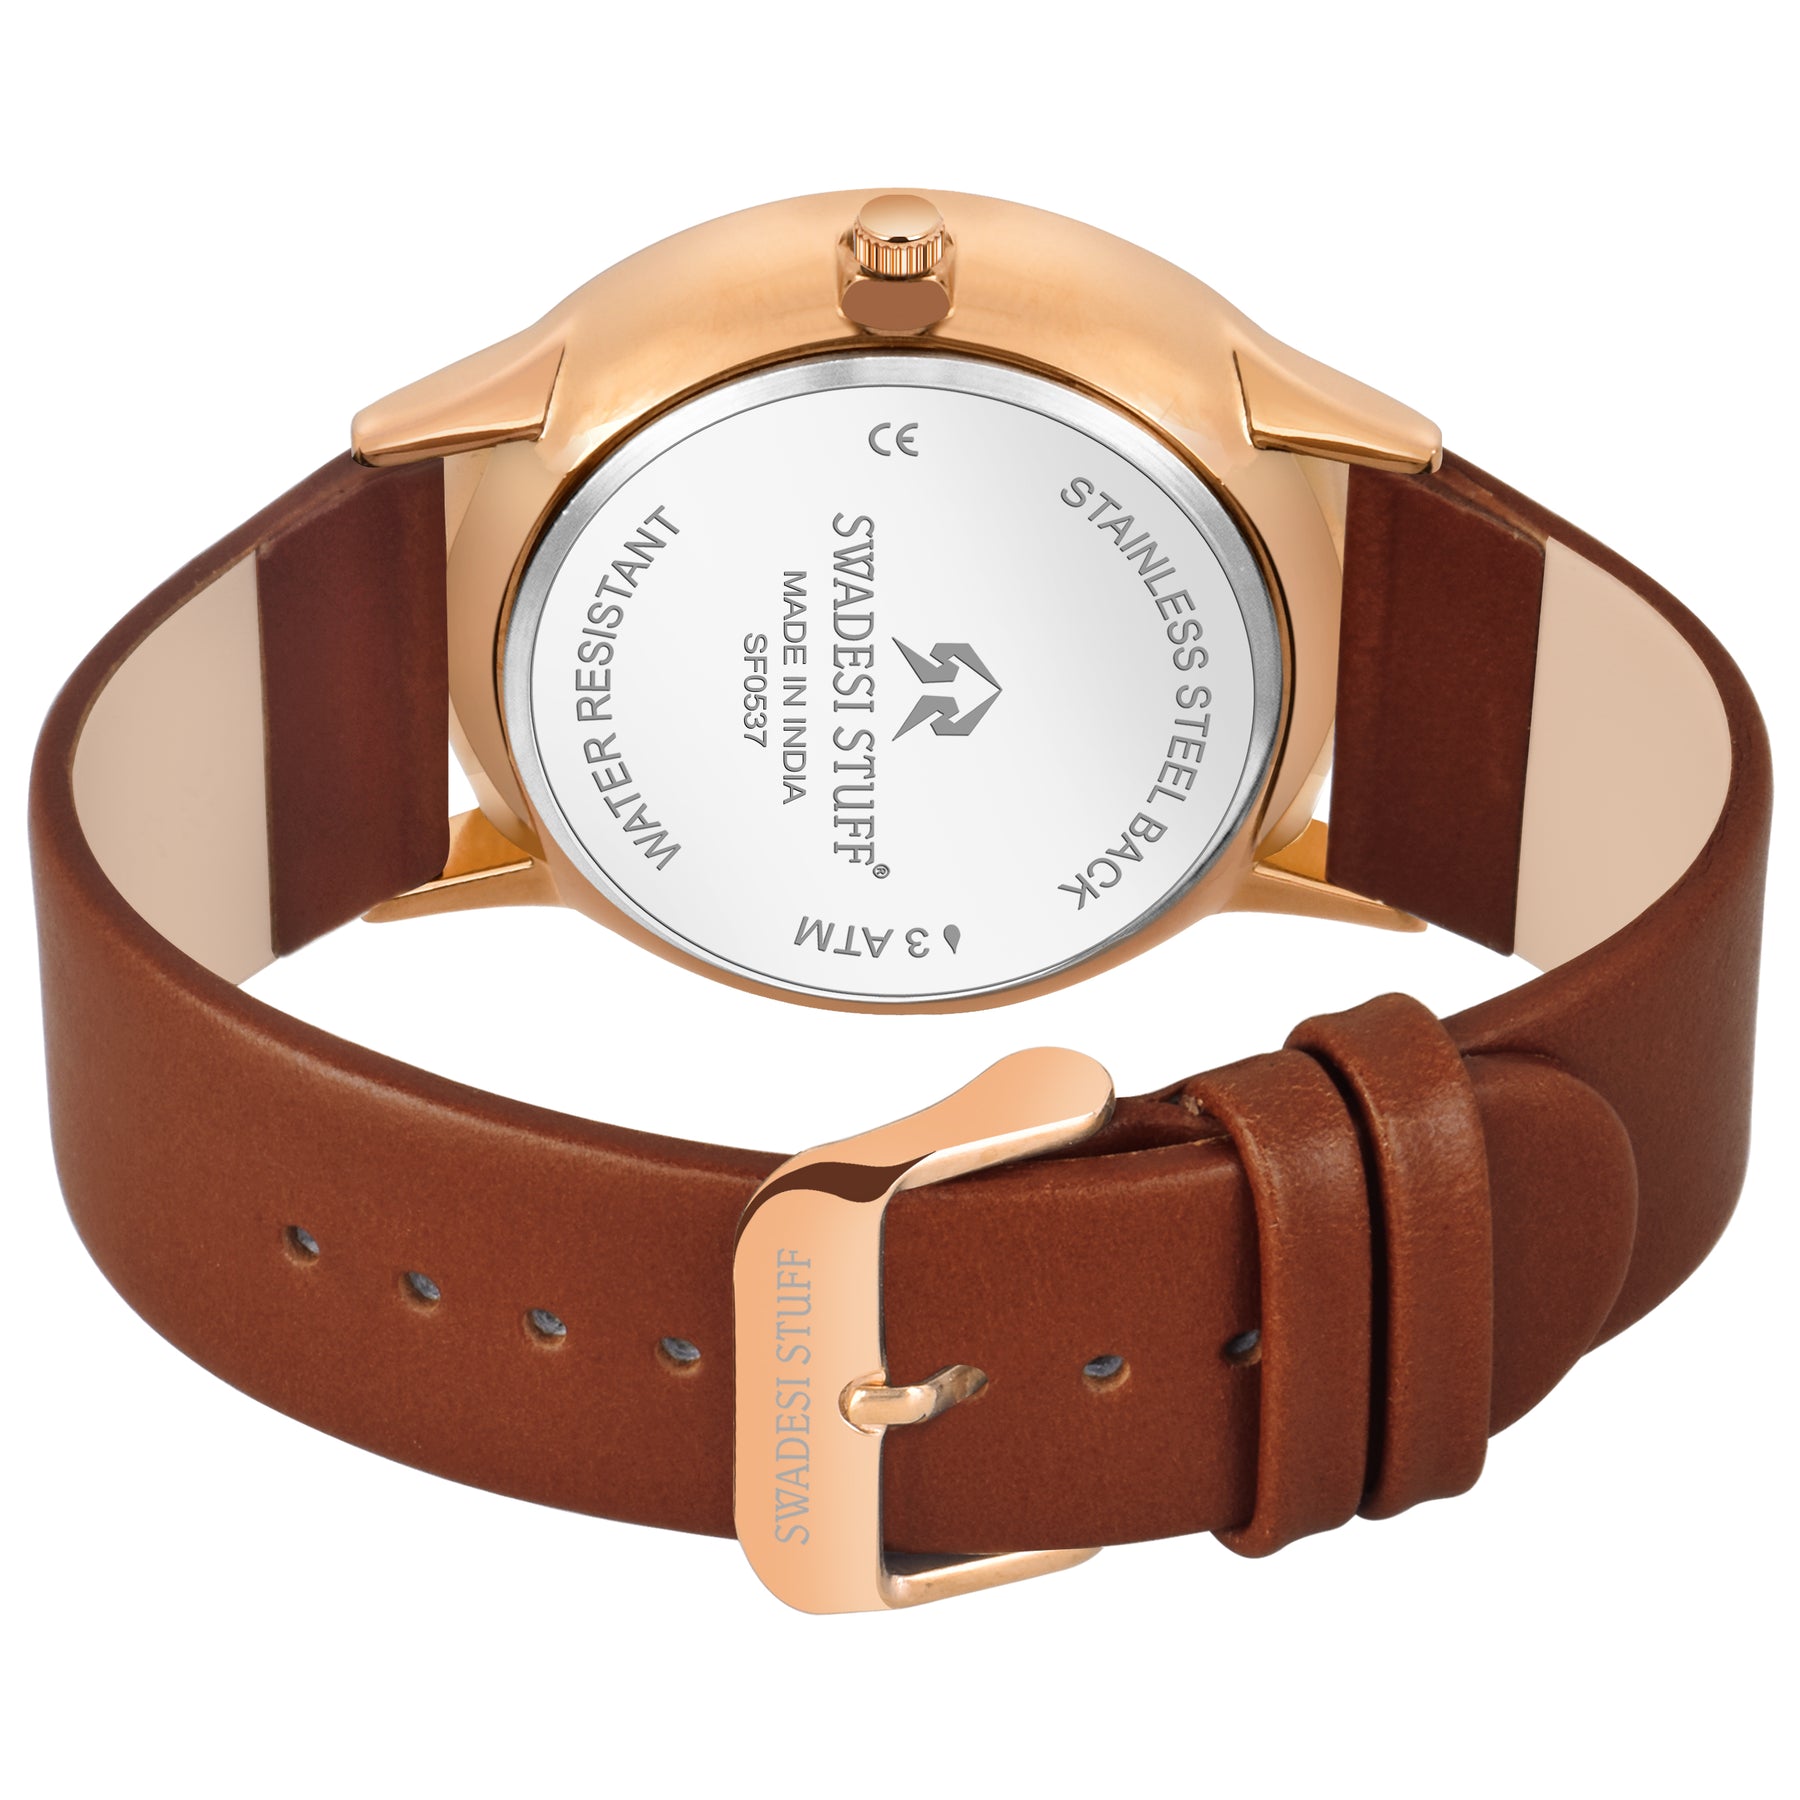 Trailblazer - Brown - Premium & Luxurious Watch For Men